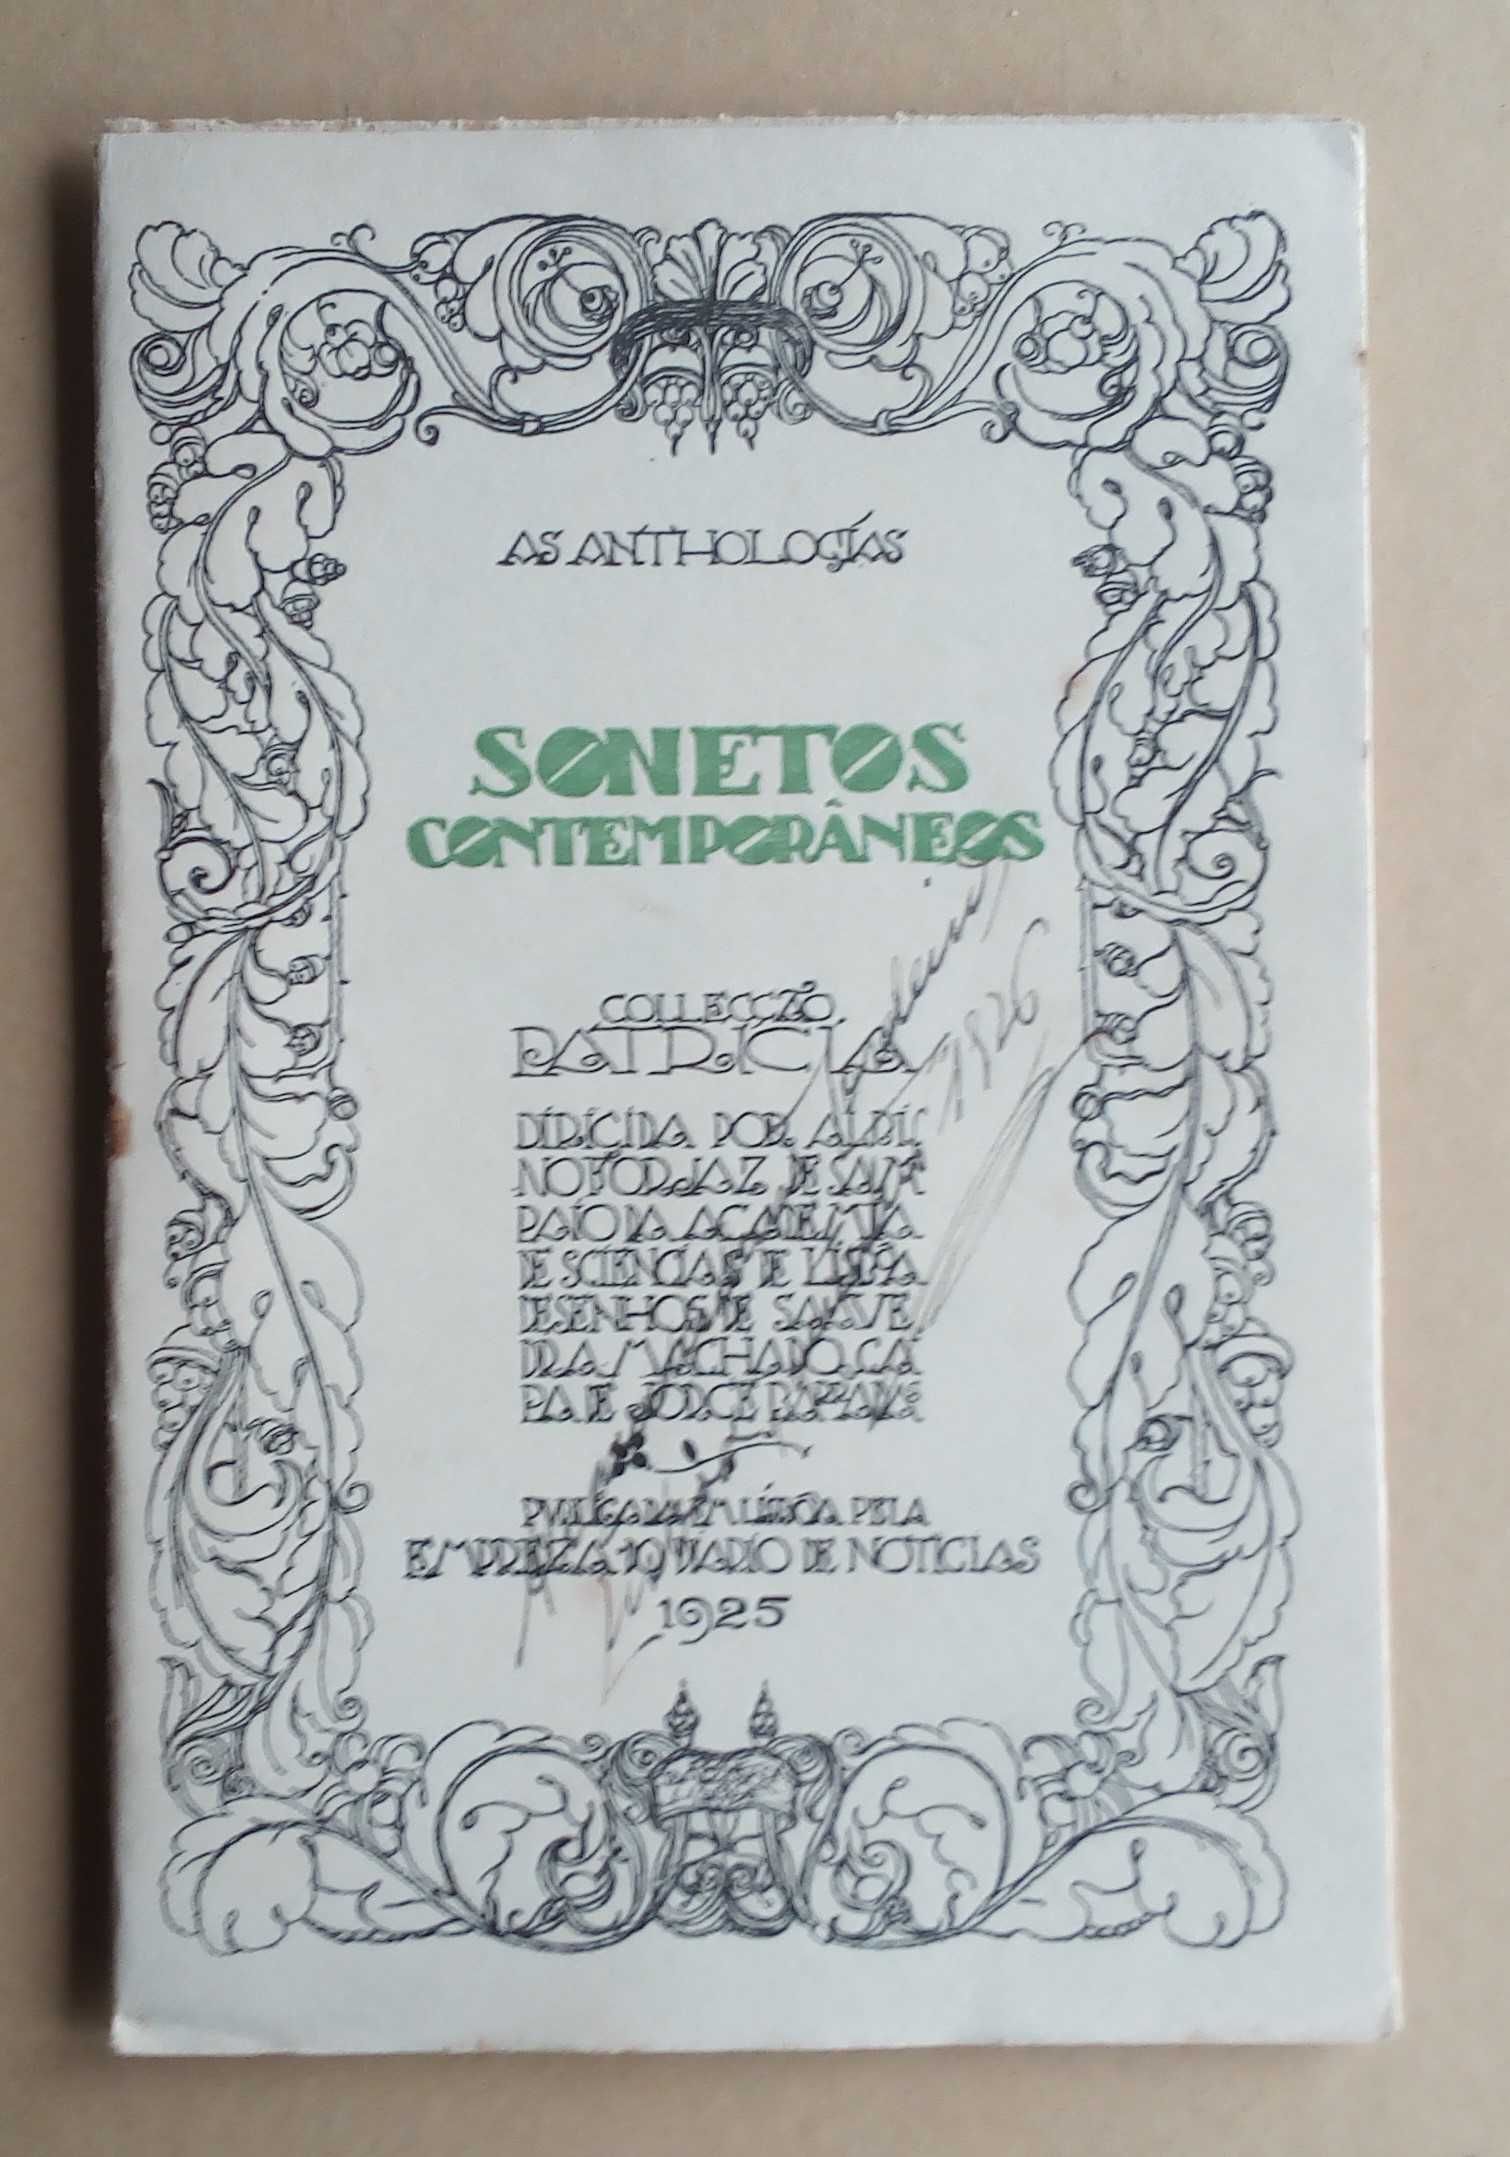 sonetos contemporâneos as antologias coleção patrícia